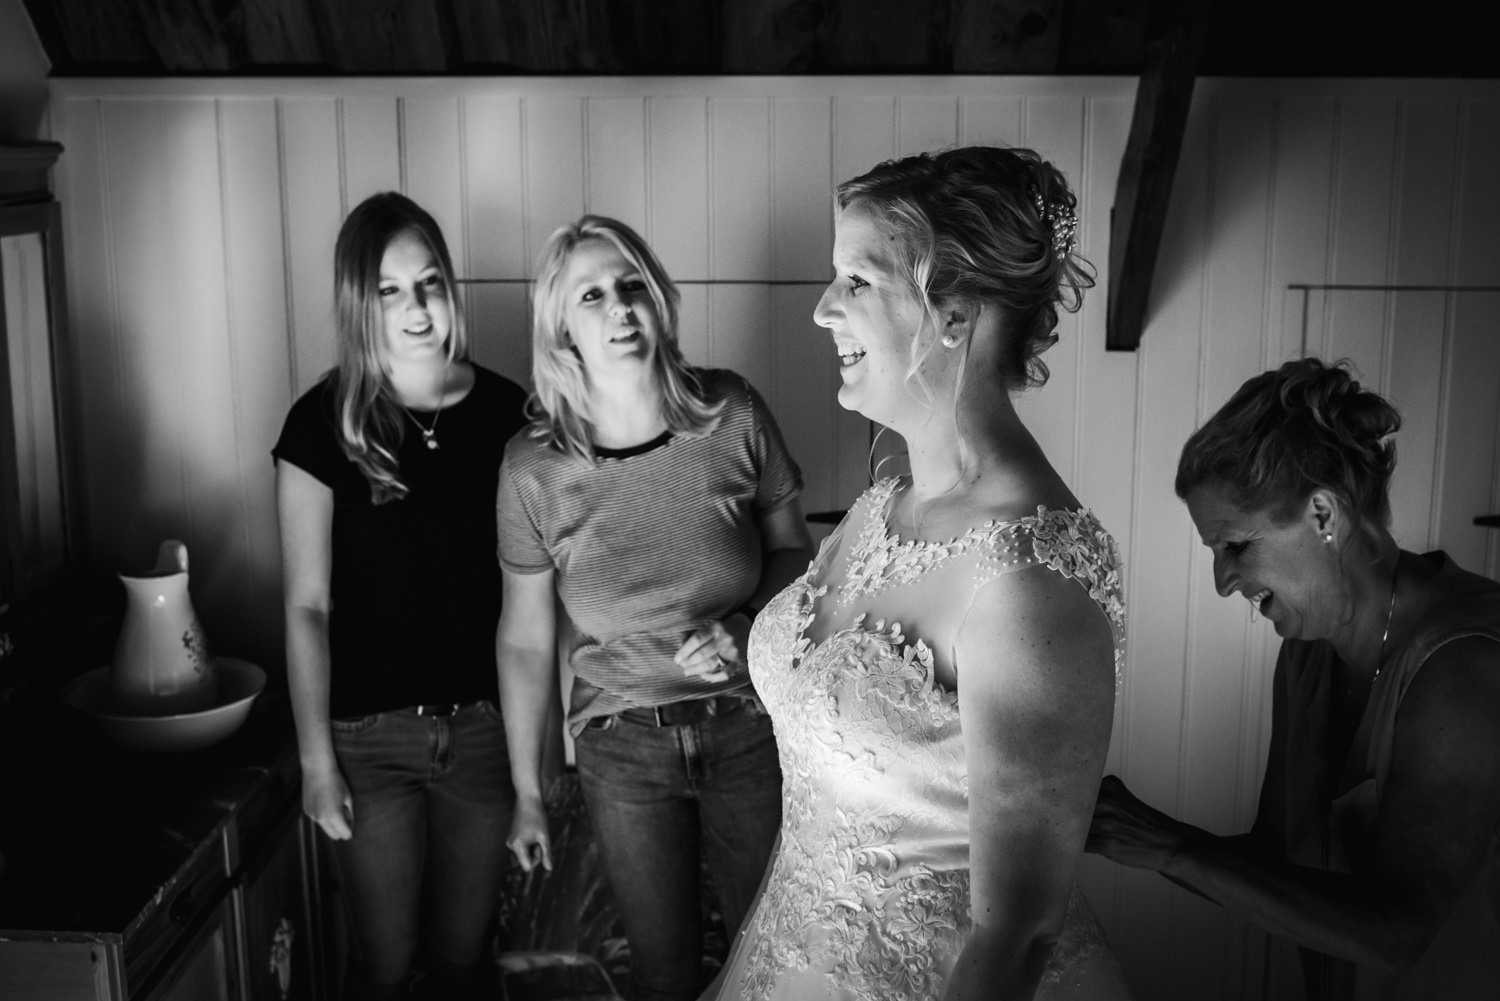 Het aandoen van de bruidsjurk bij de bruid in Etten-Leur